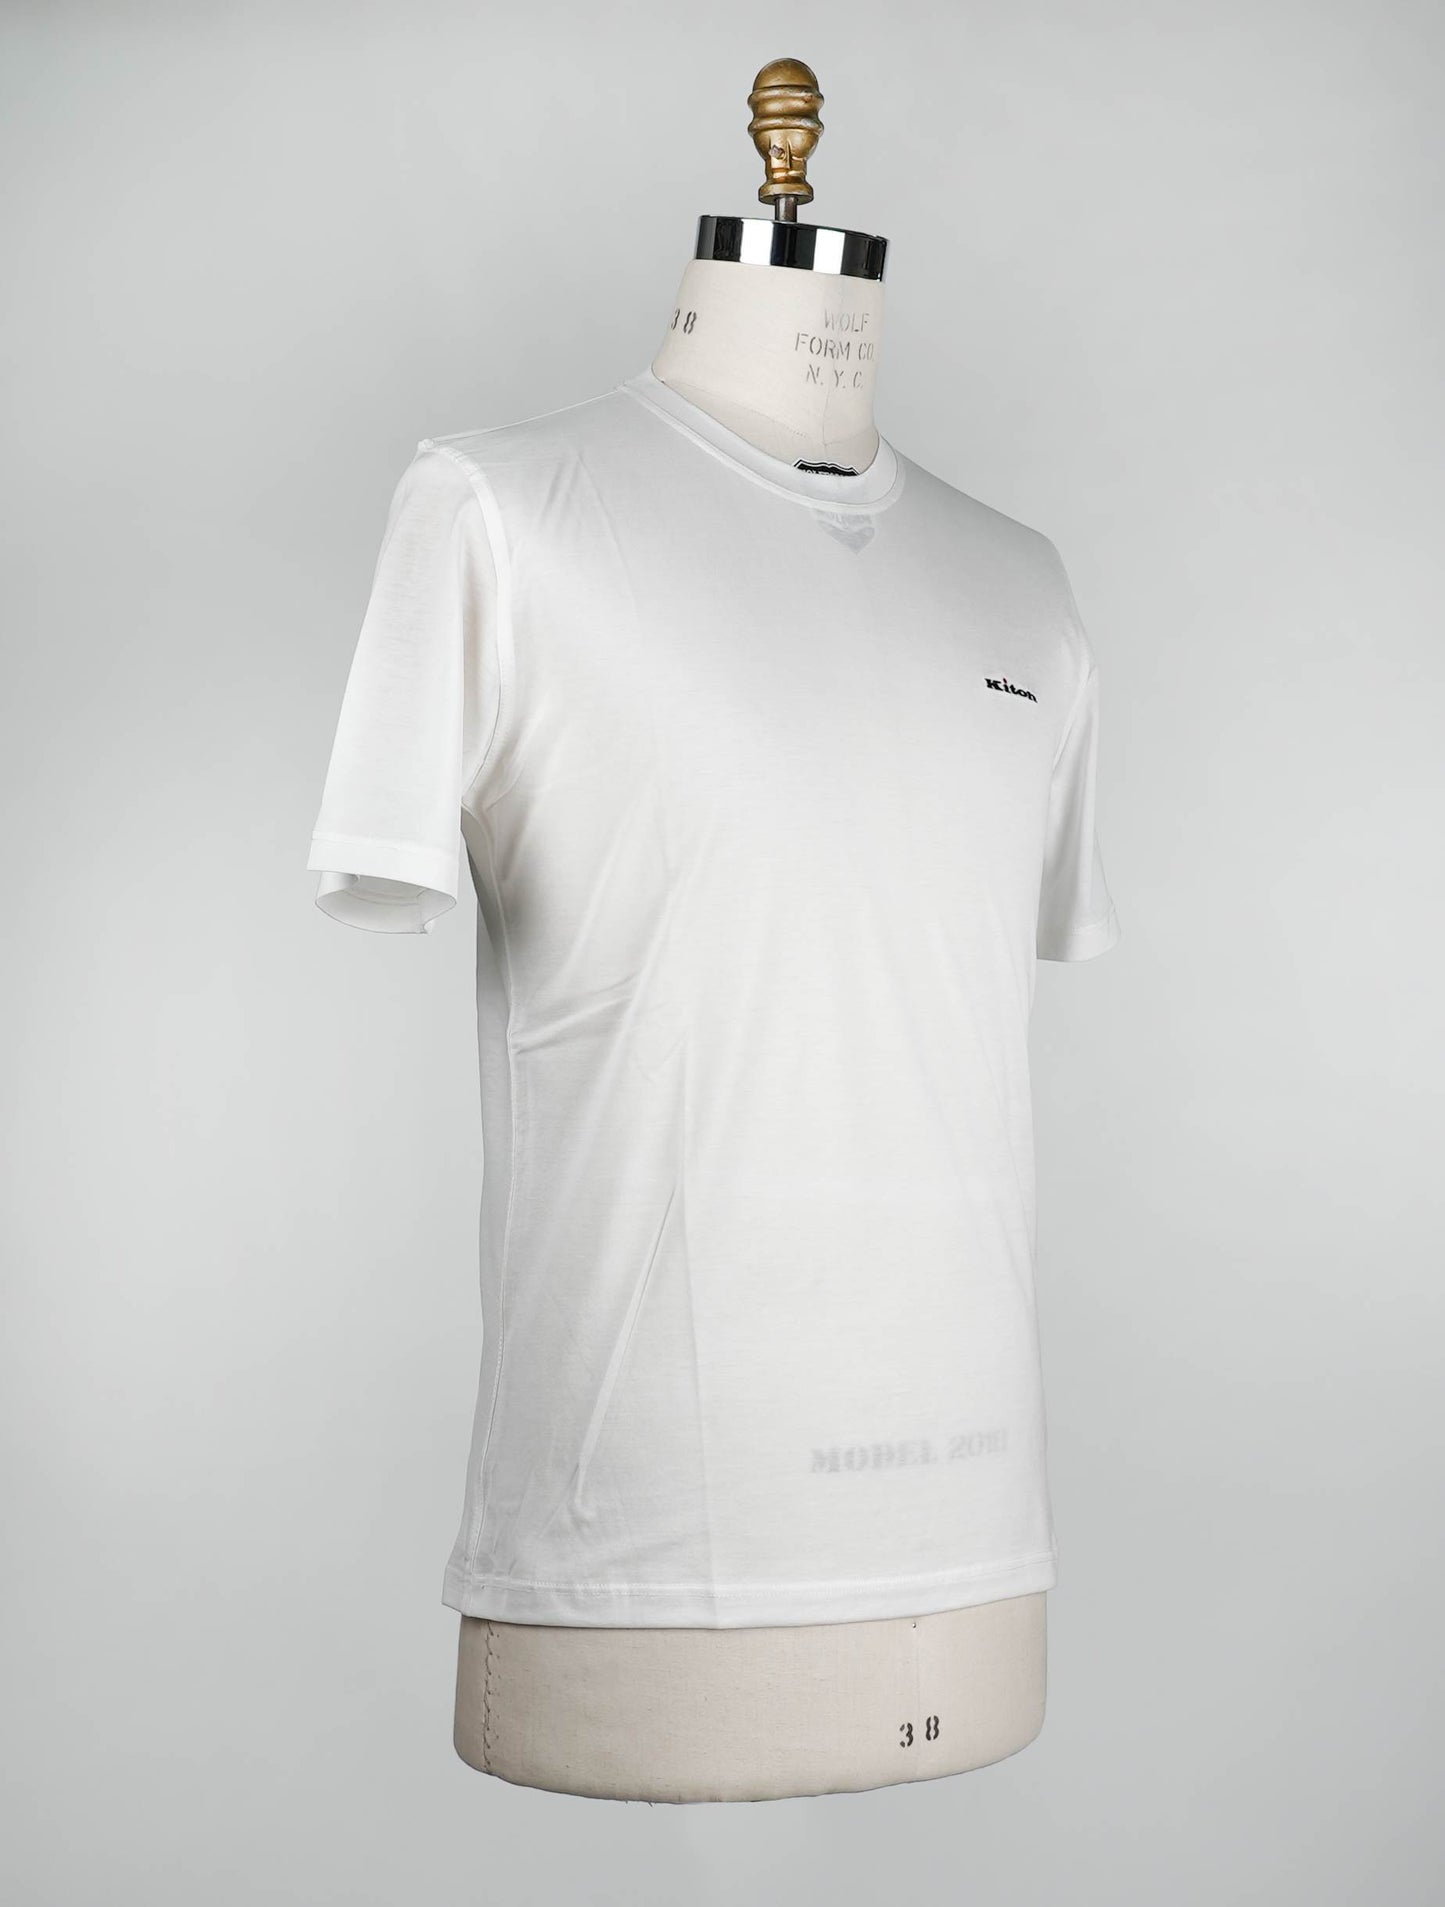 Camiseta Algodón Blanco Kiton